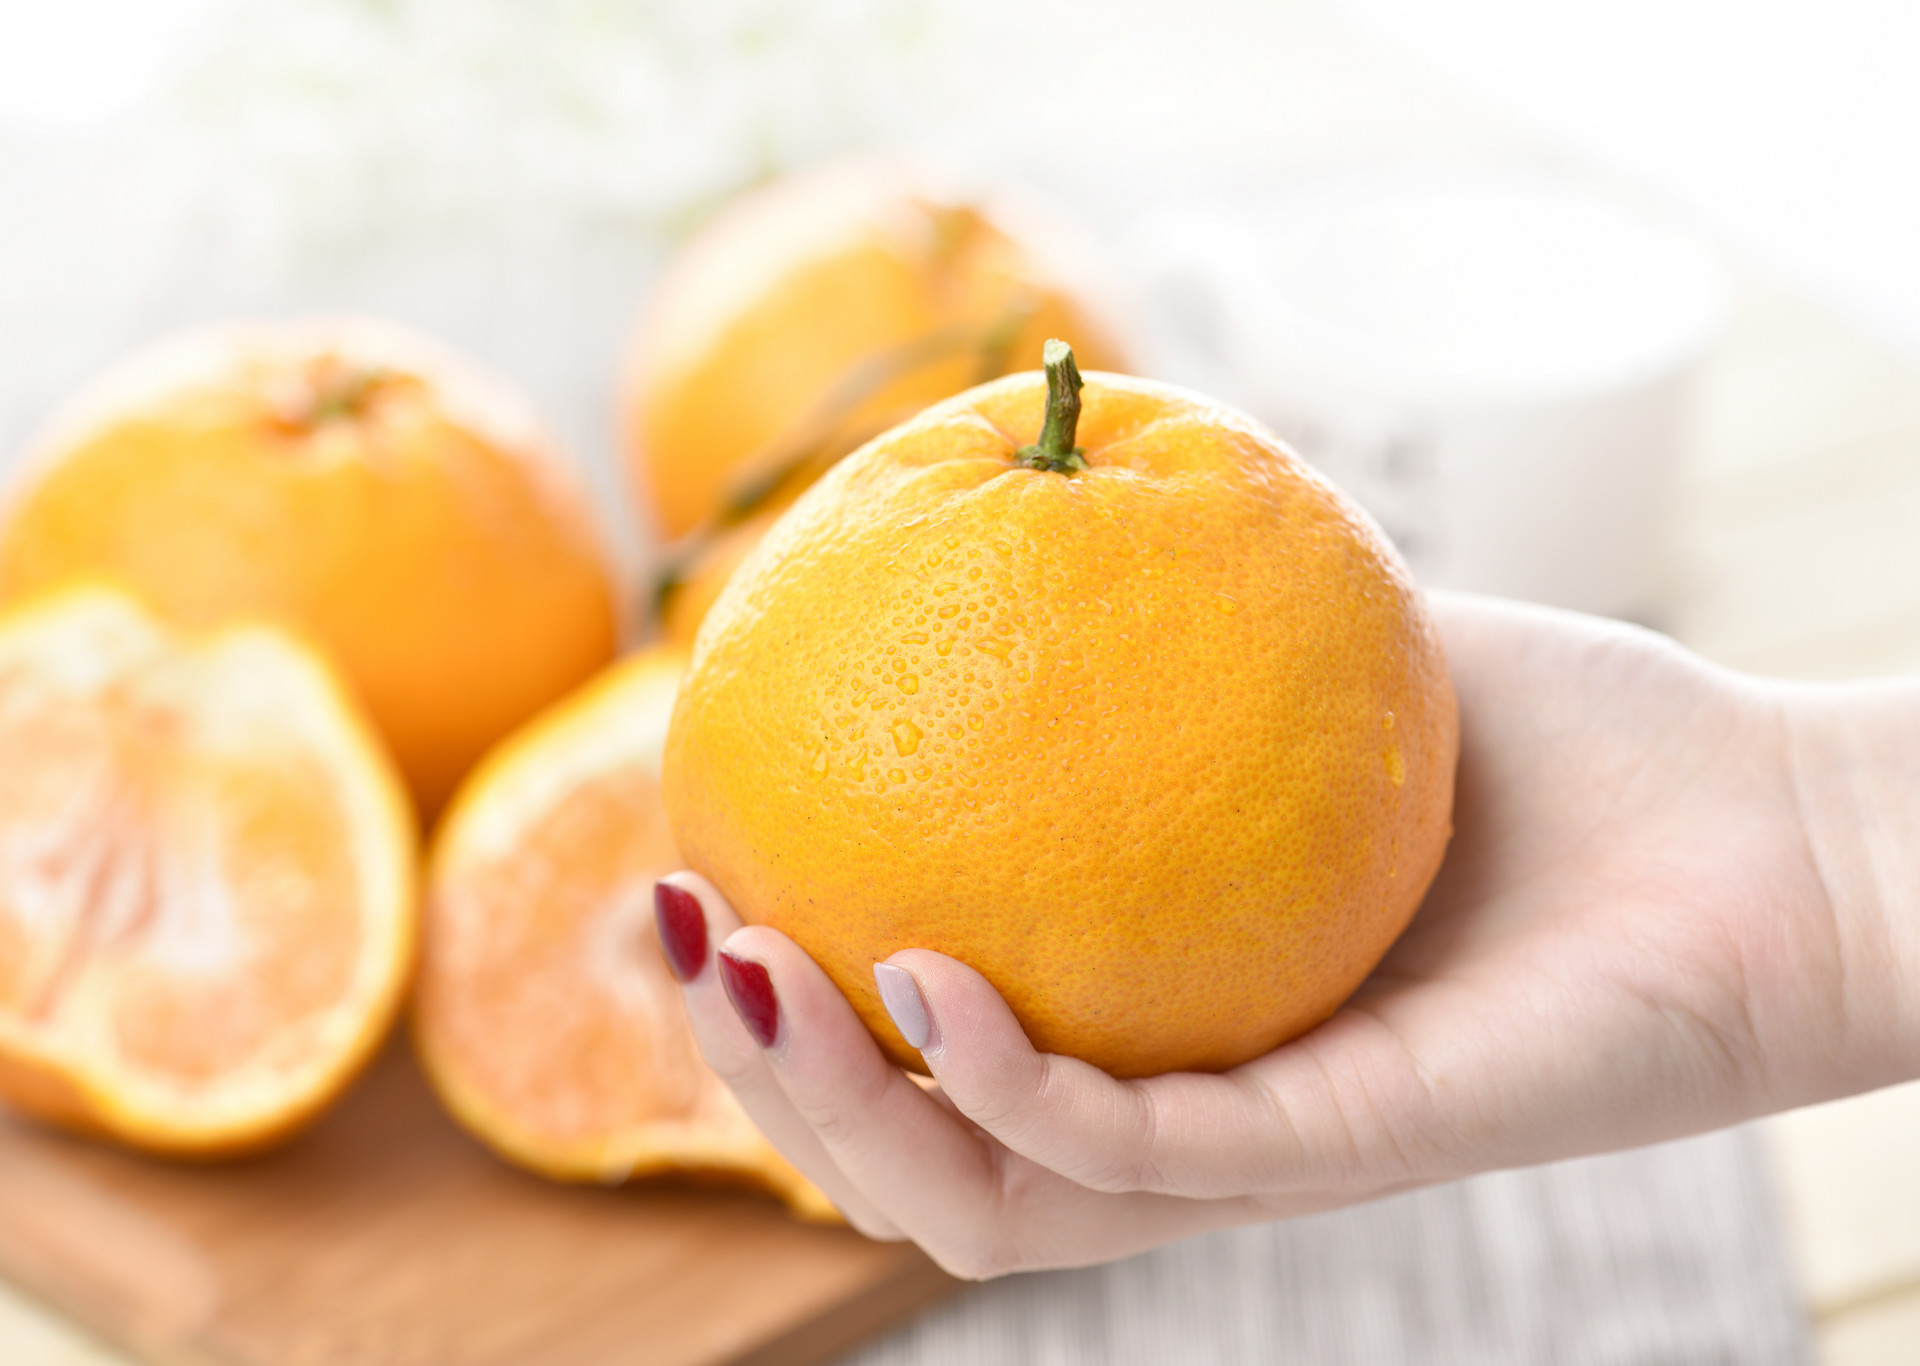 丑橘是一种很好吃的柑橘类水果，我们也叫它“丑八怪”。丑橘比普通的橘子好吃，而且营养价值更高，那主要有哪些功效呢?